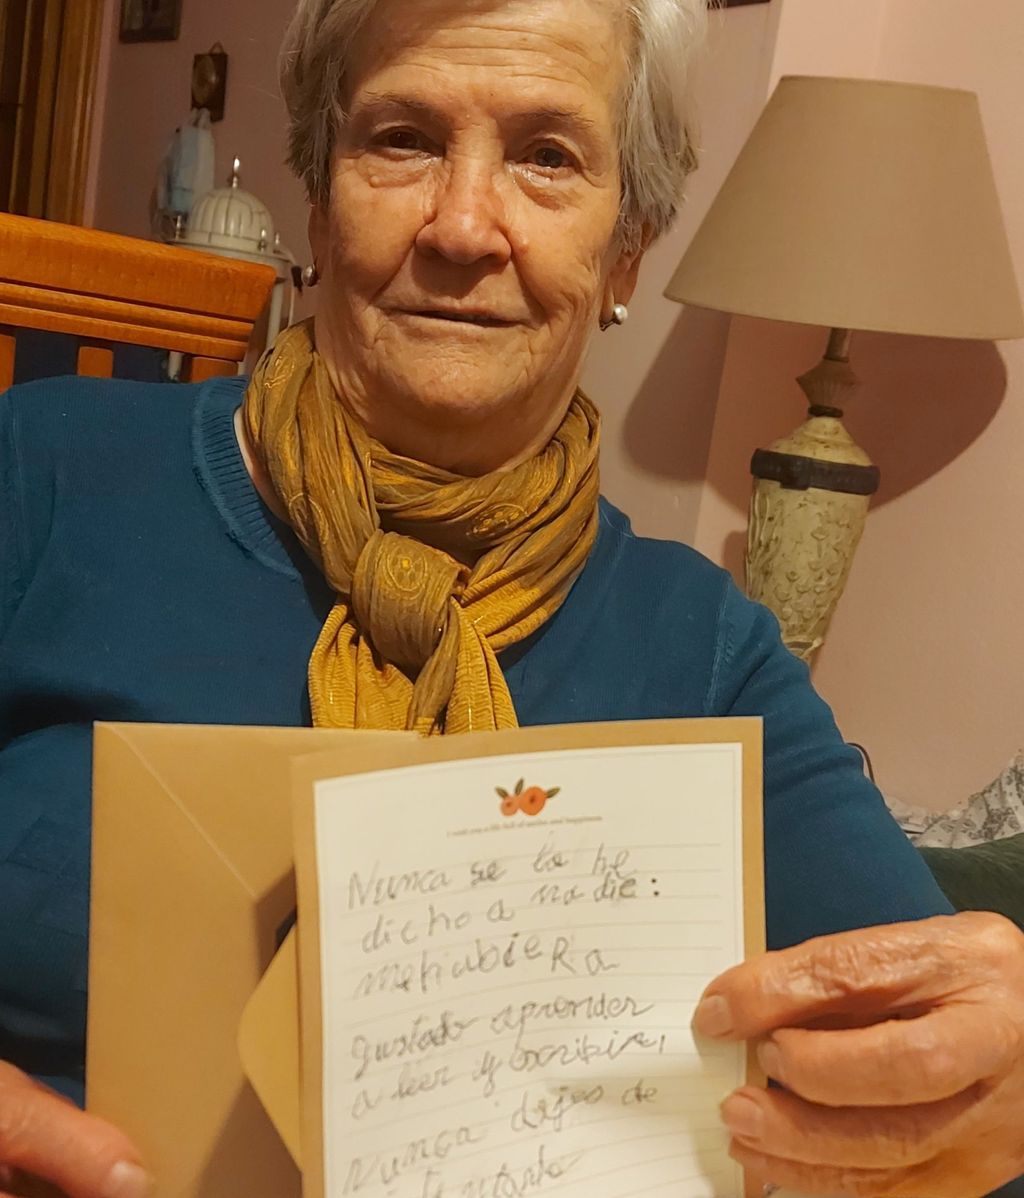 Elena, la abuela que ha ganado un concurso de cartas tras aprender a escribir a los 76 años: “Creí que se iban a reír” Artículo ID: 6899778 Version: 1 Borrador